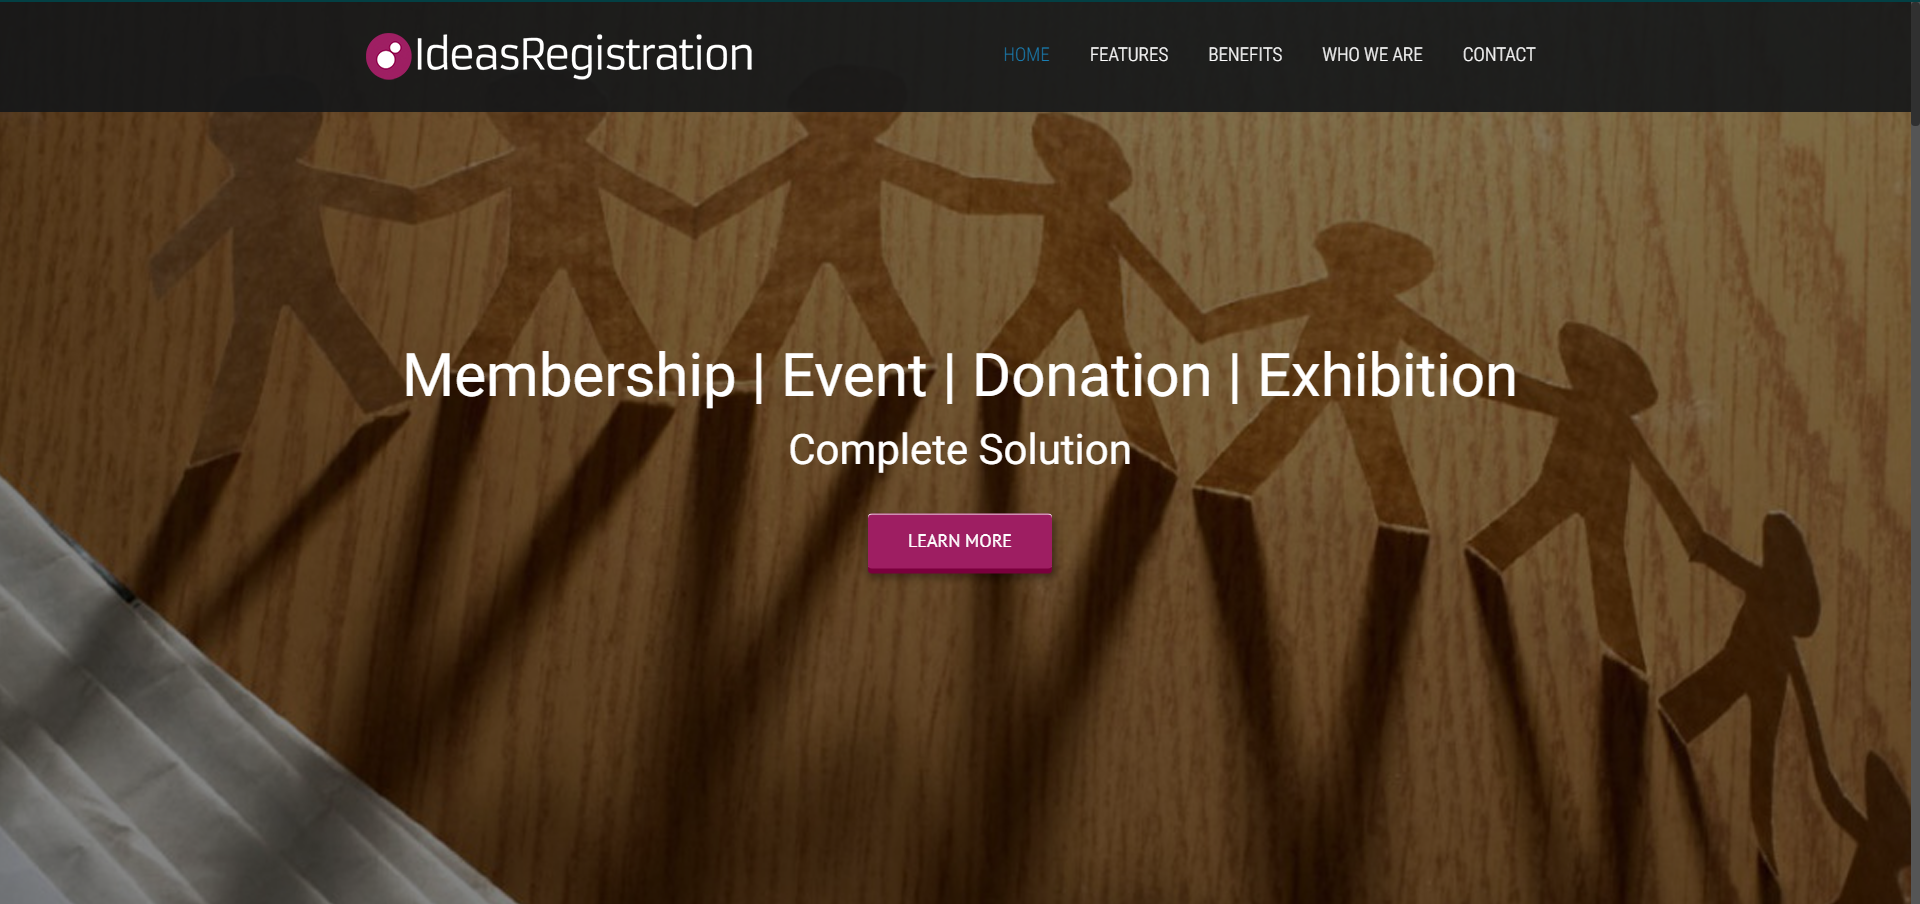 Ideas Registration Website